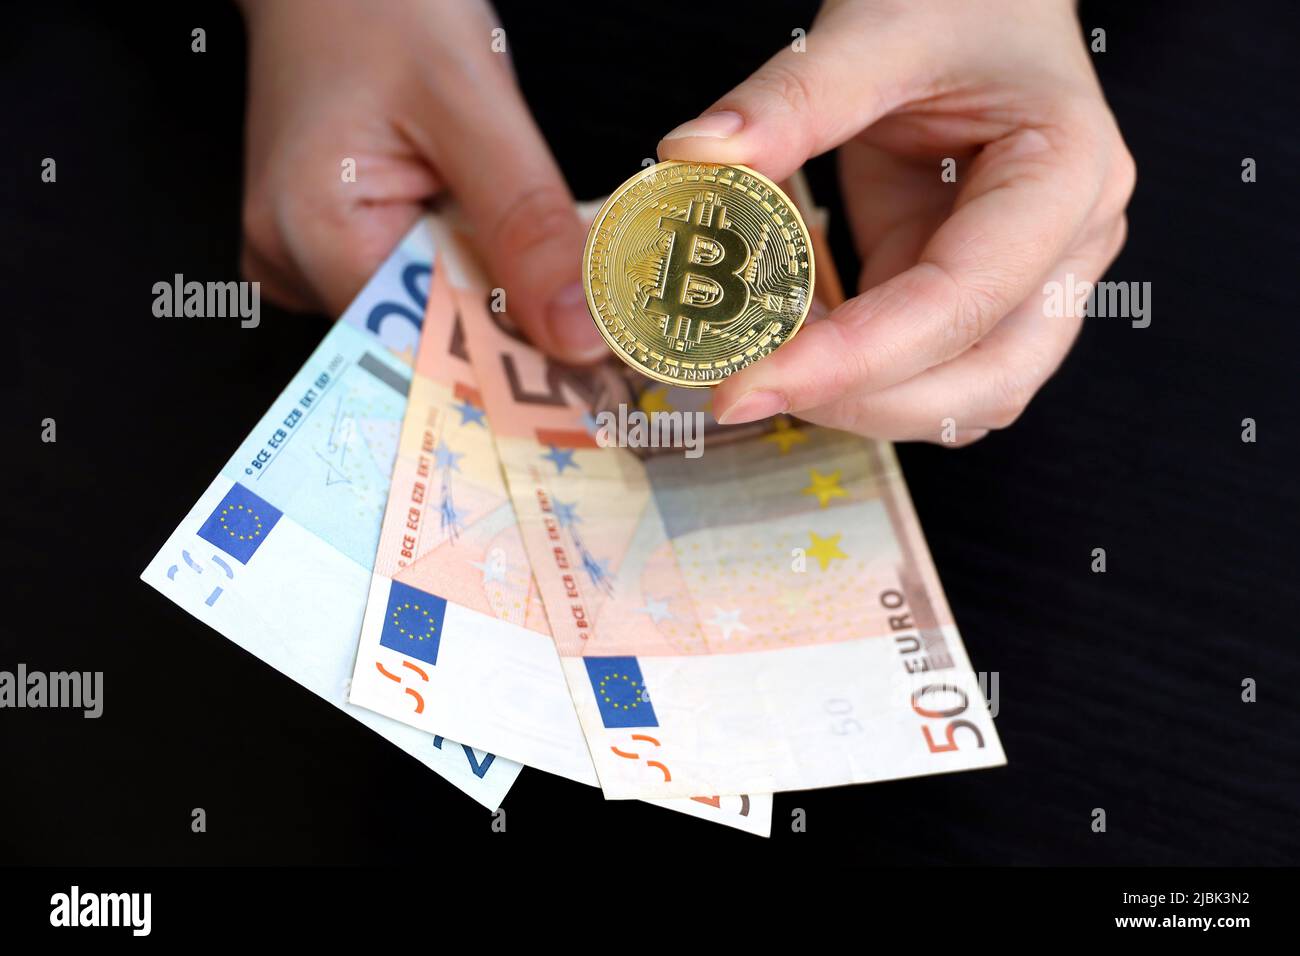 Bitcoin et billets en euros entre les mains des femmes sur fond sombre. Monnaie électronique décentralisée, crypto-monnaie Banque D'Images